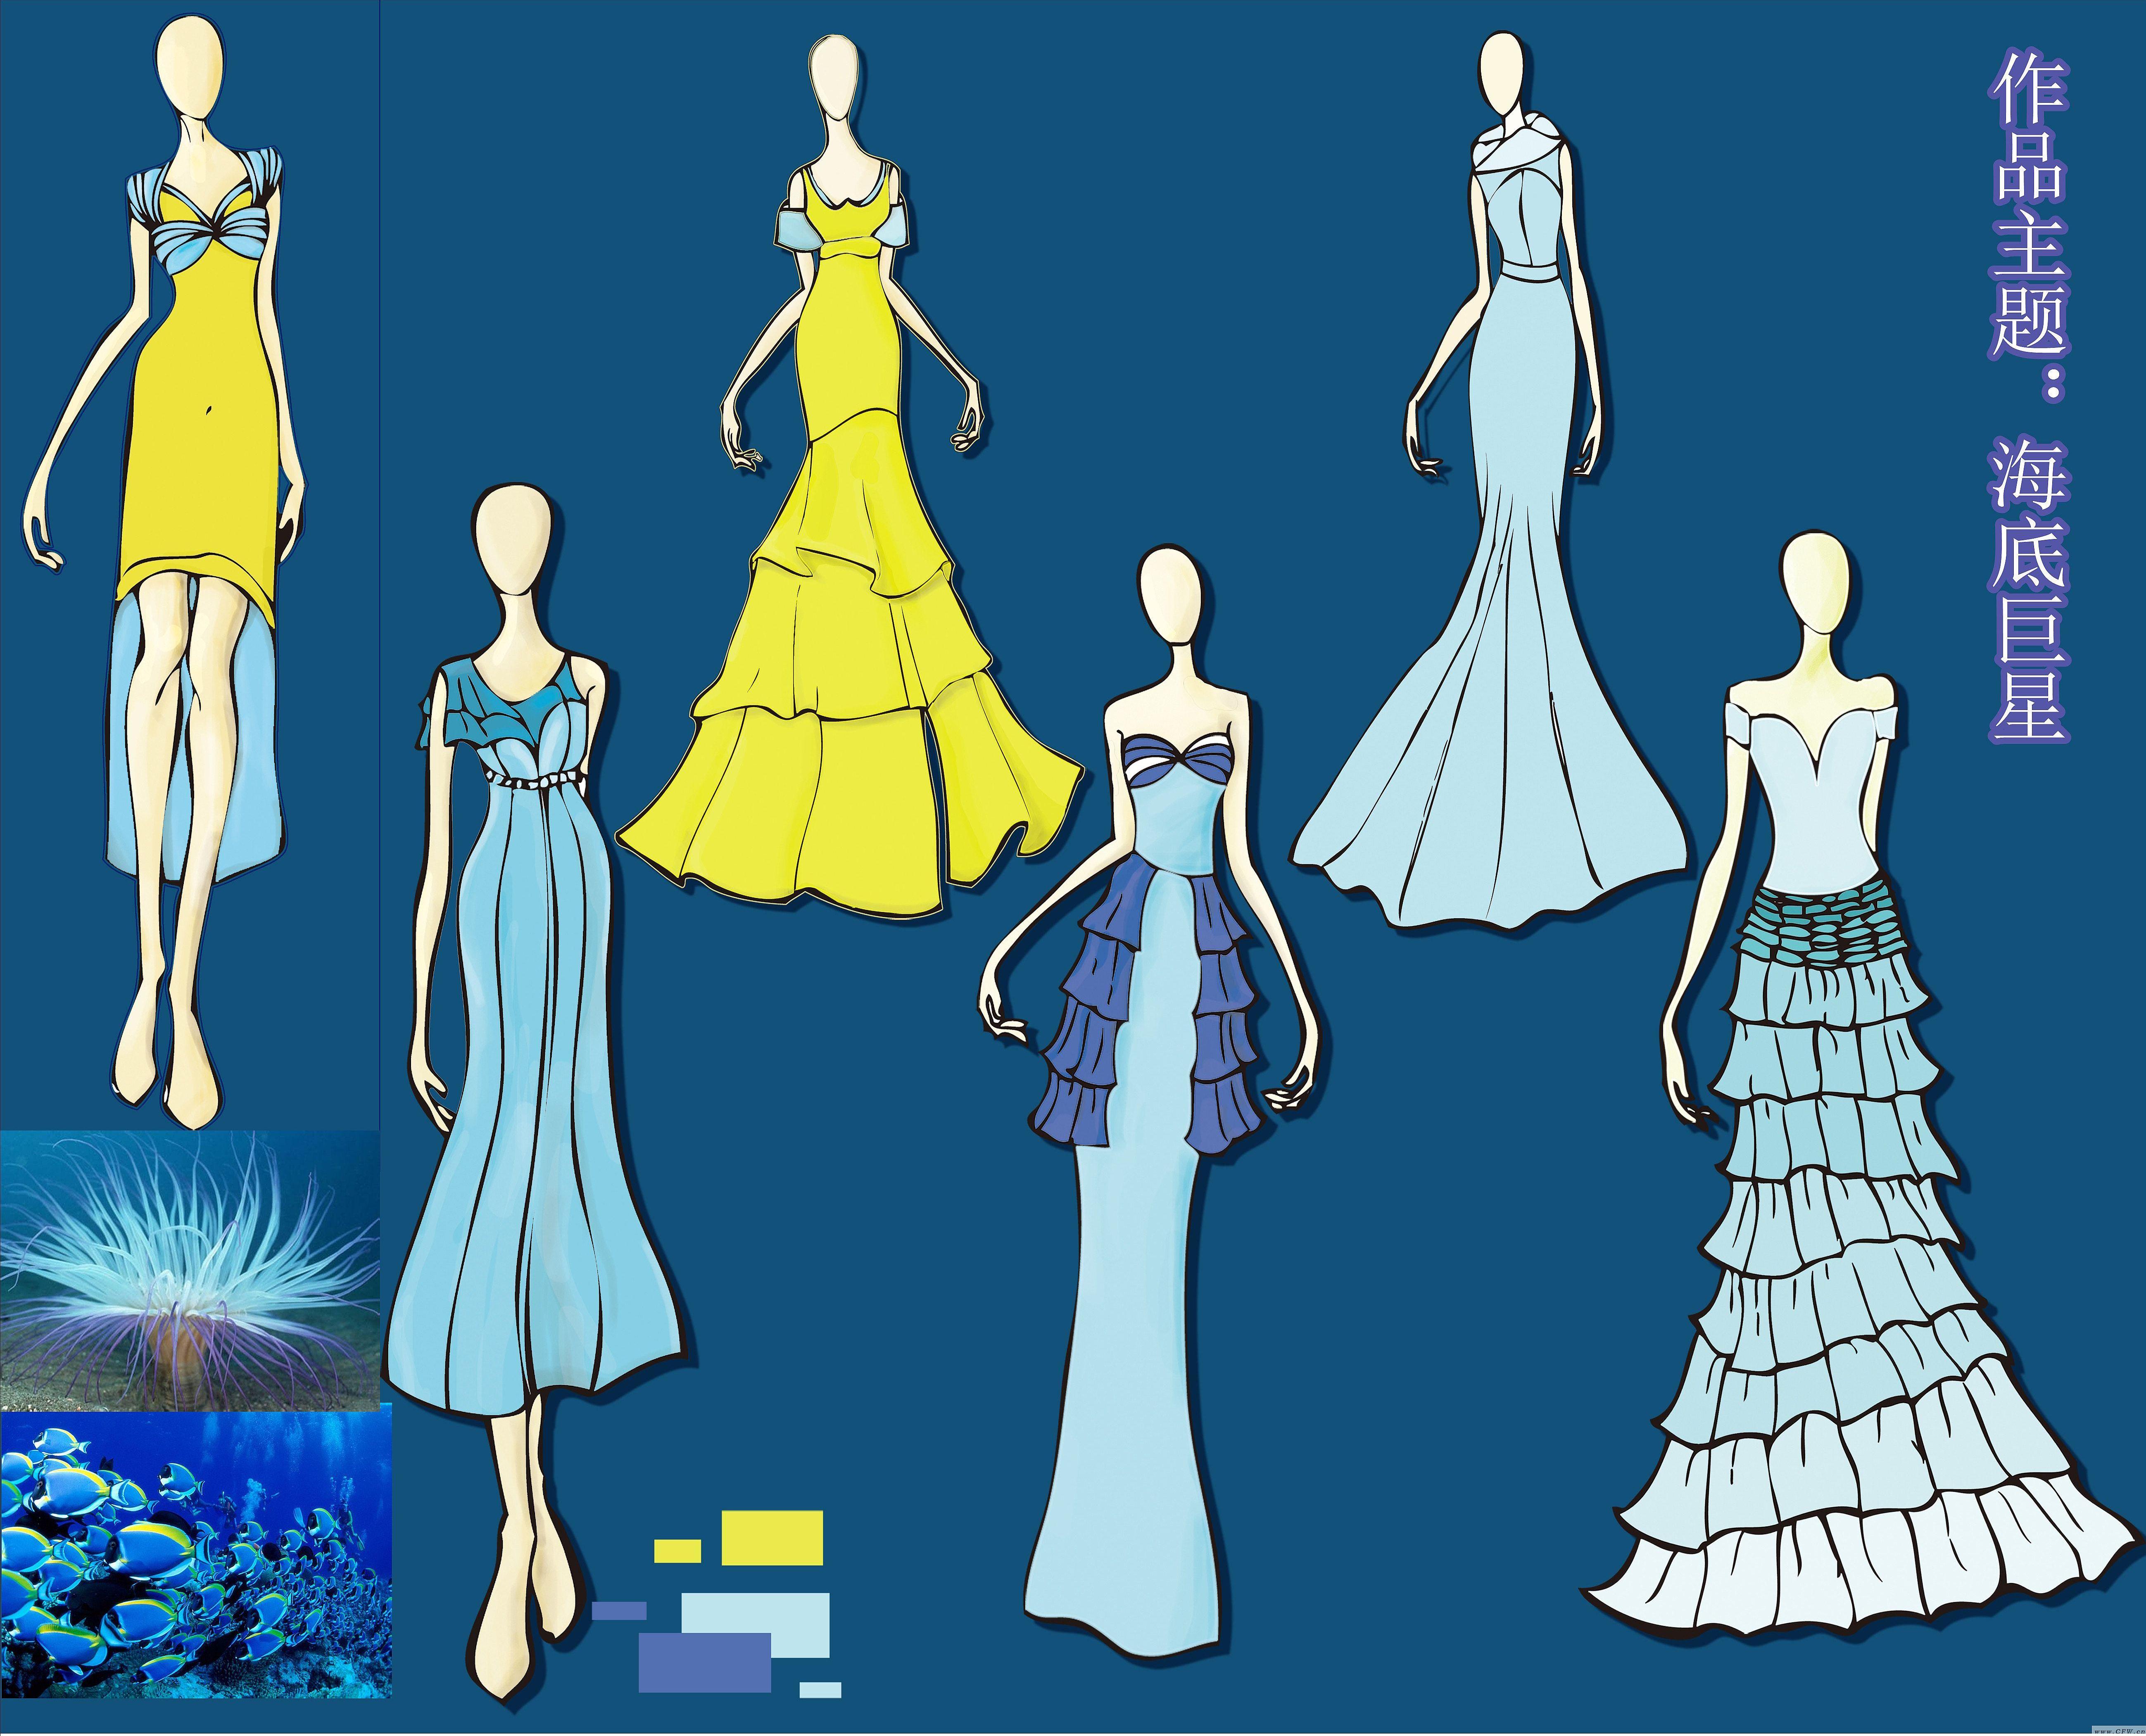 海底巨星-婚纱礼服设计-服装设计